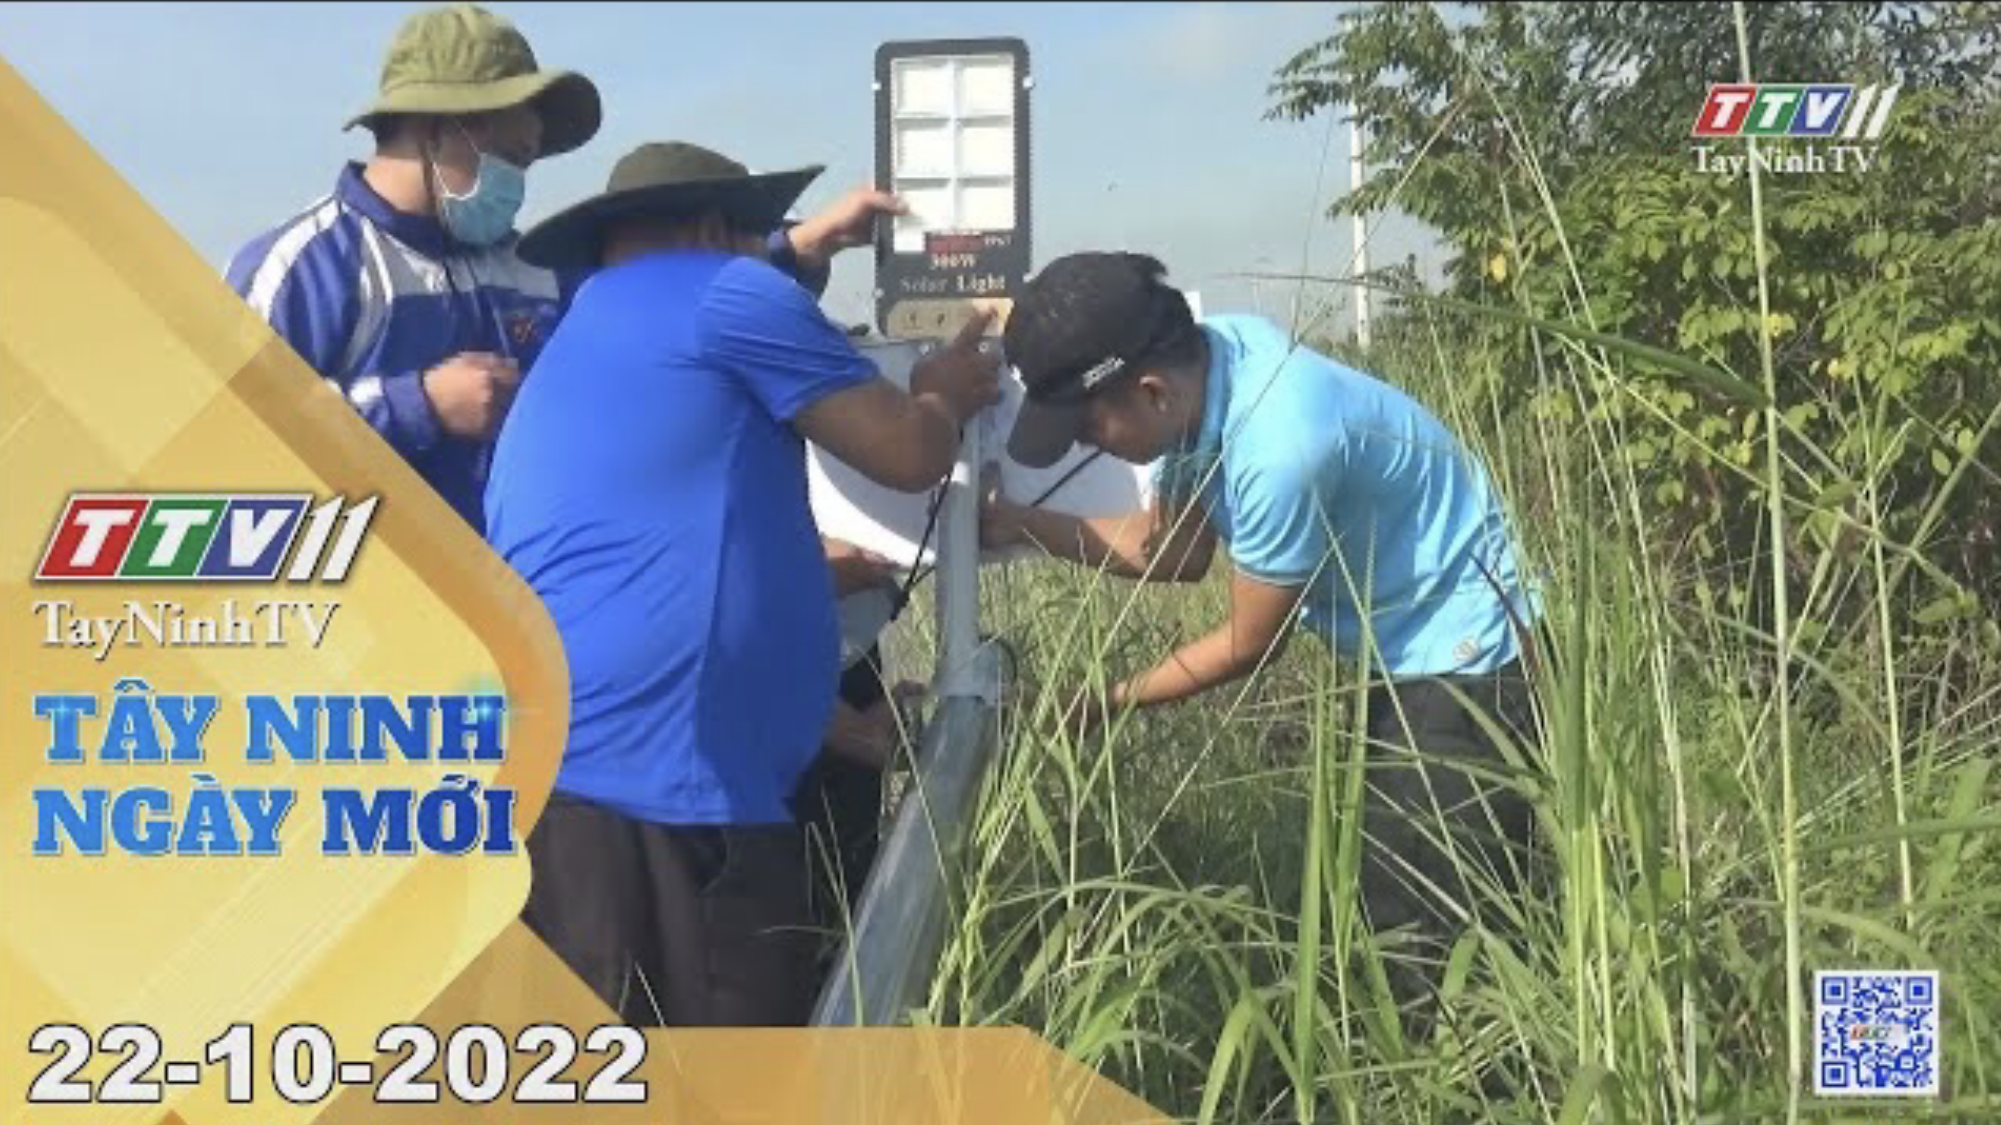 Tây Ninh ngày mới 22-10-2022 | Tin tức hôm nay | TayNinhTV